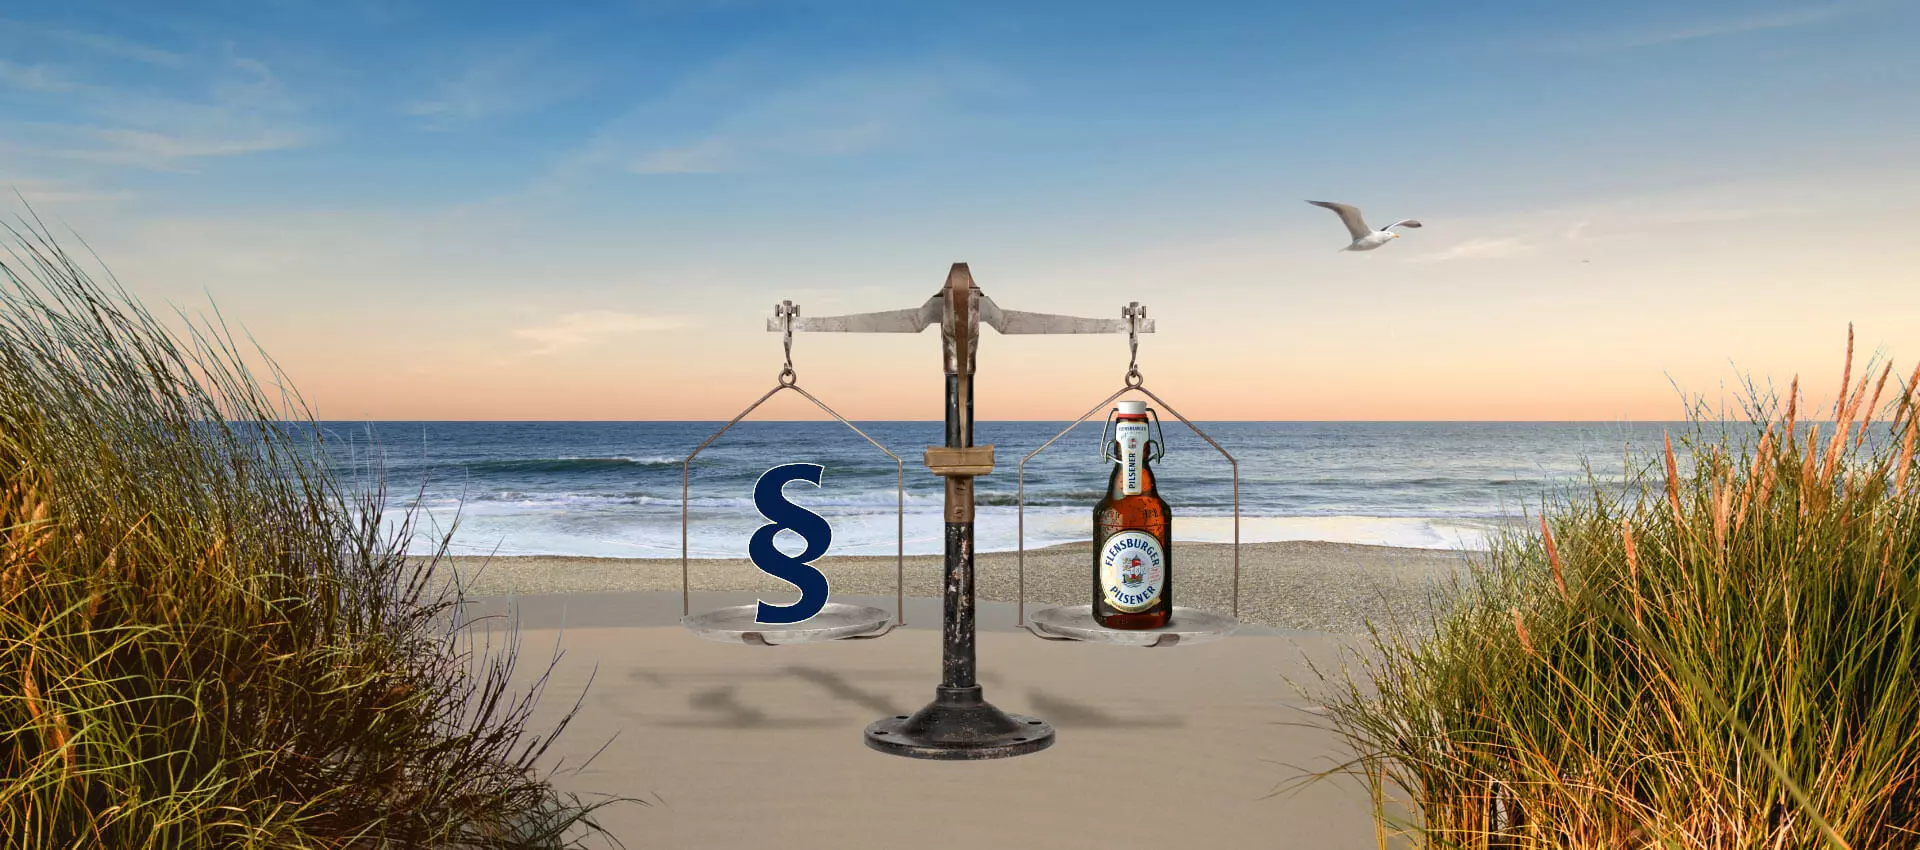 Bildcollage aus einer alten Waage mit Paragraphensymbol in Blau links auf dem Schälchen und einer Bierflasche rechts auf dem Schälchen und am Strand.